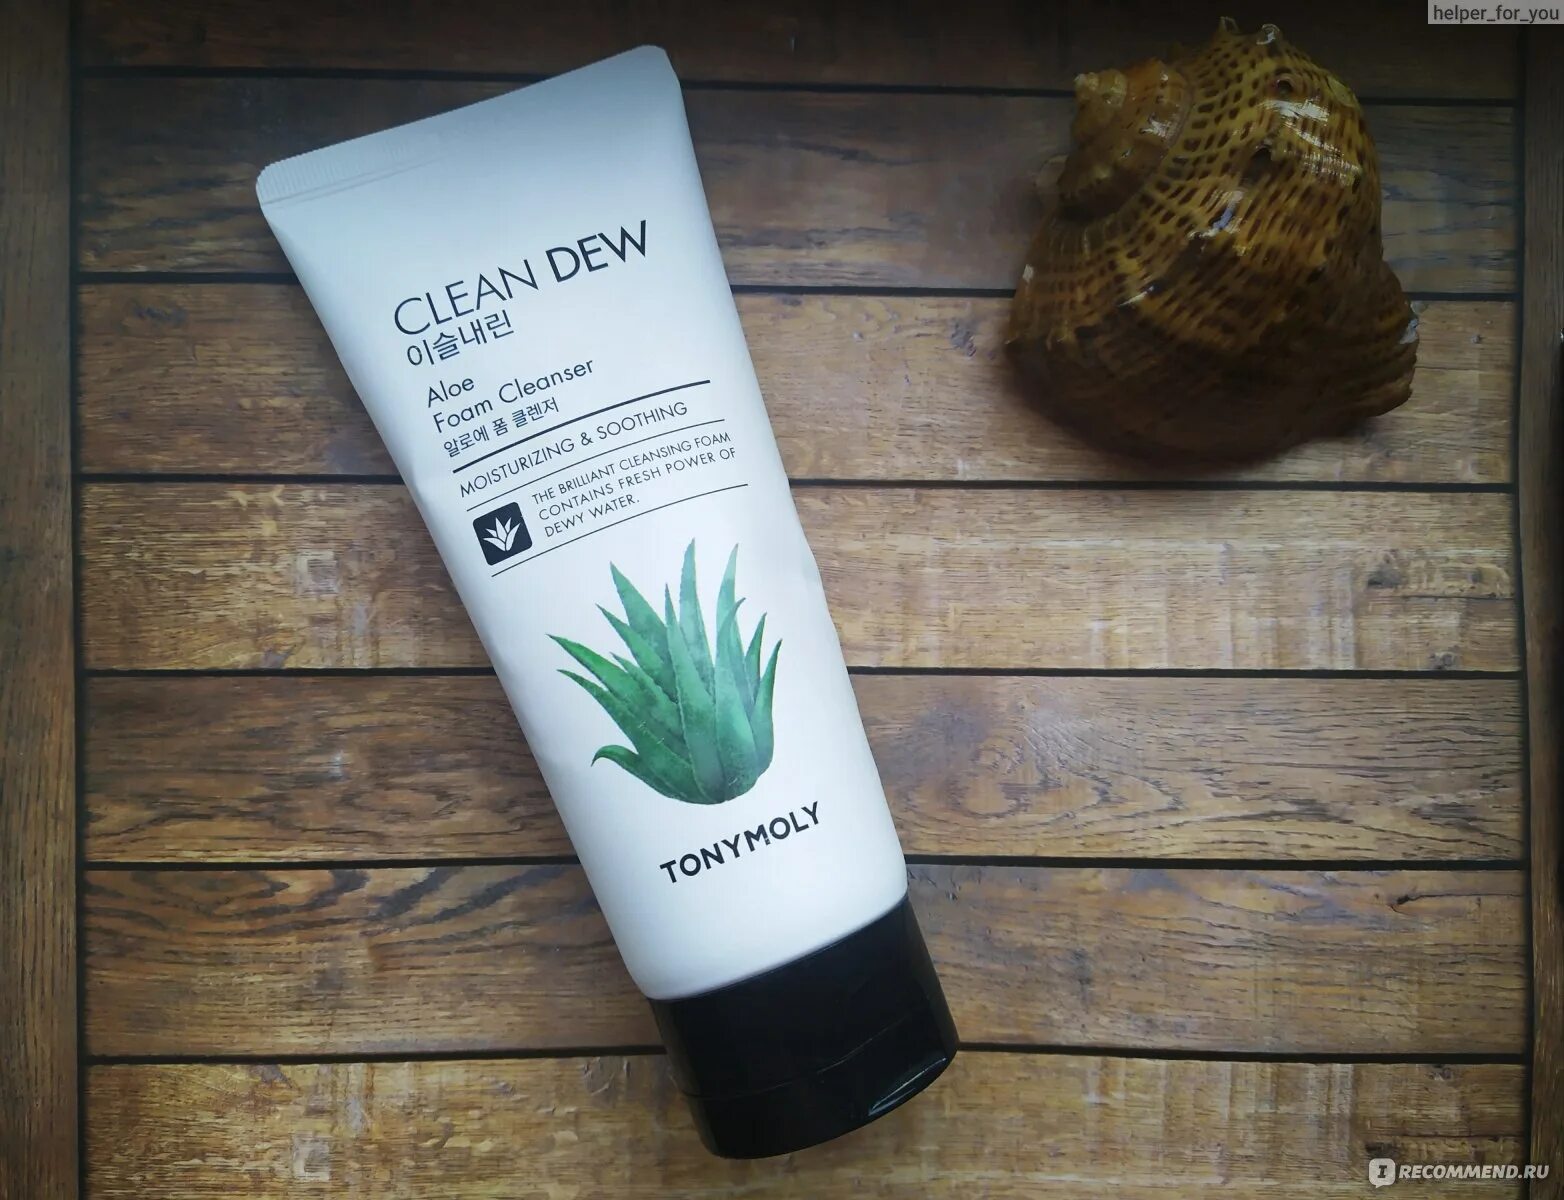 Tony Moly clean Dew Aloe Foam Cleanser 180 ml. Tony Moly пенка для умывания с алоэ. Пенка clean Dew Aloe. Tony Moly clean Dew Aloe.